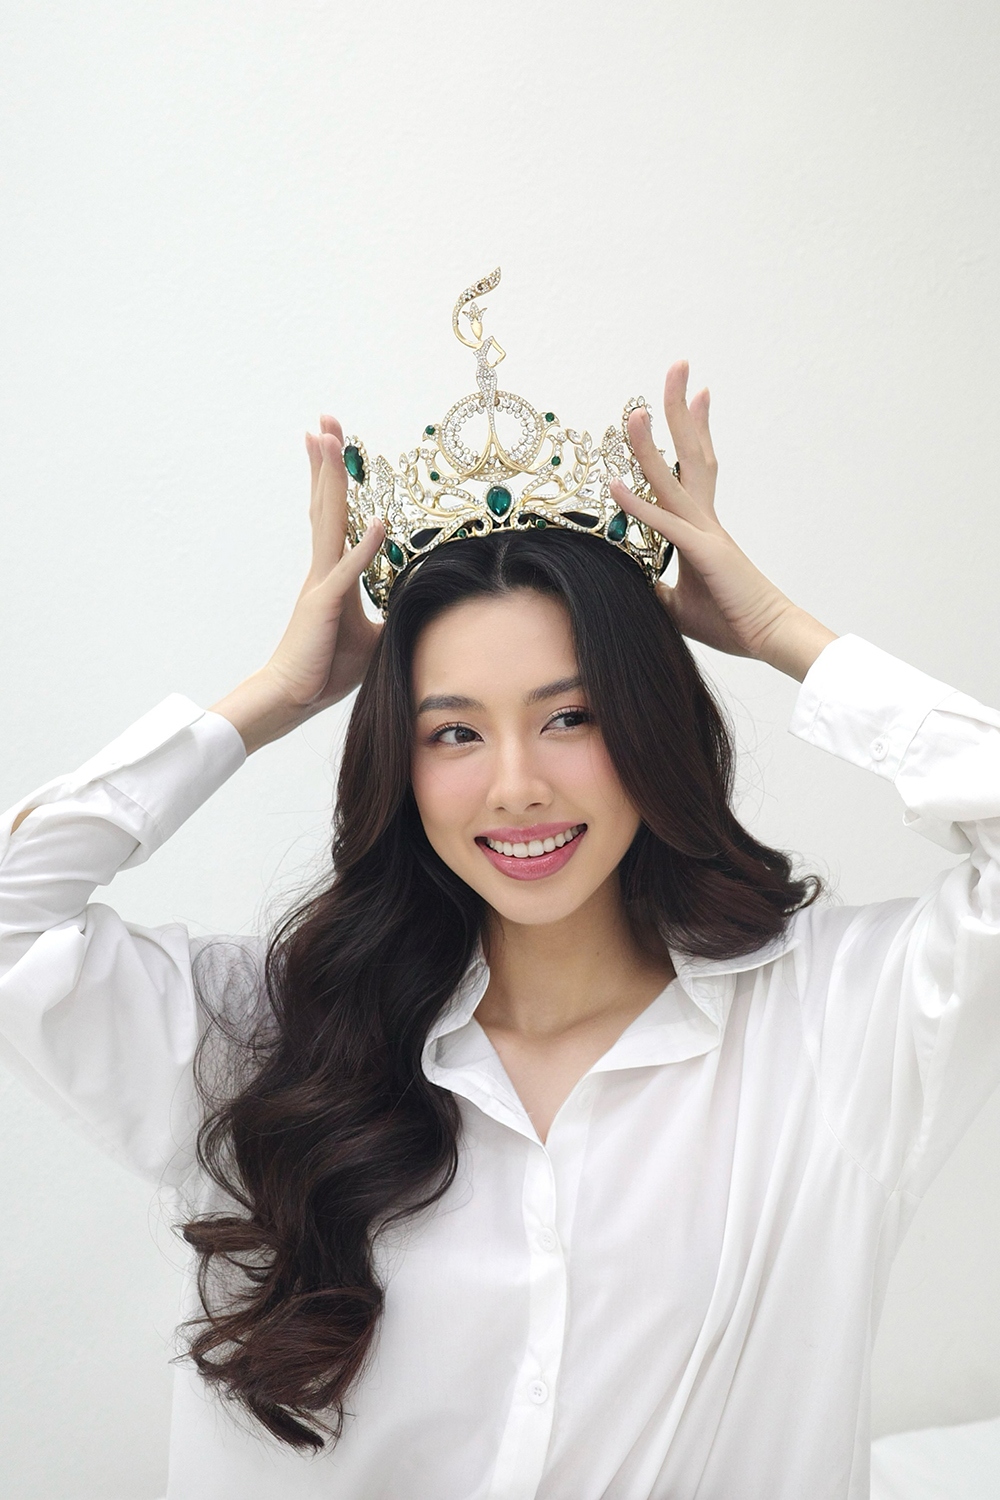 Hoa hậu Thùy Tiên đẹp dịu dàng trong bộ ảnh kỷ niệm 2 năm đăng quang - Ảnh 2.